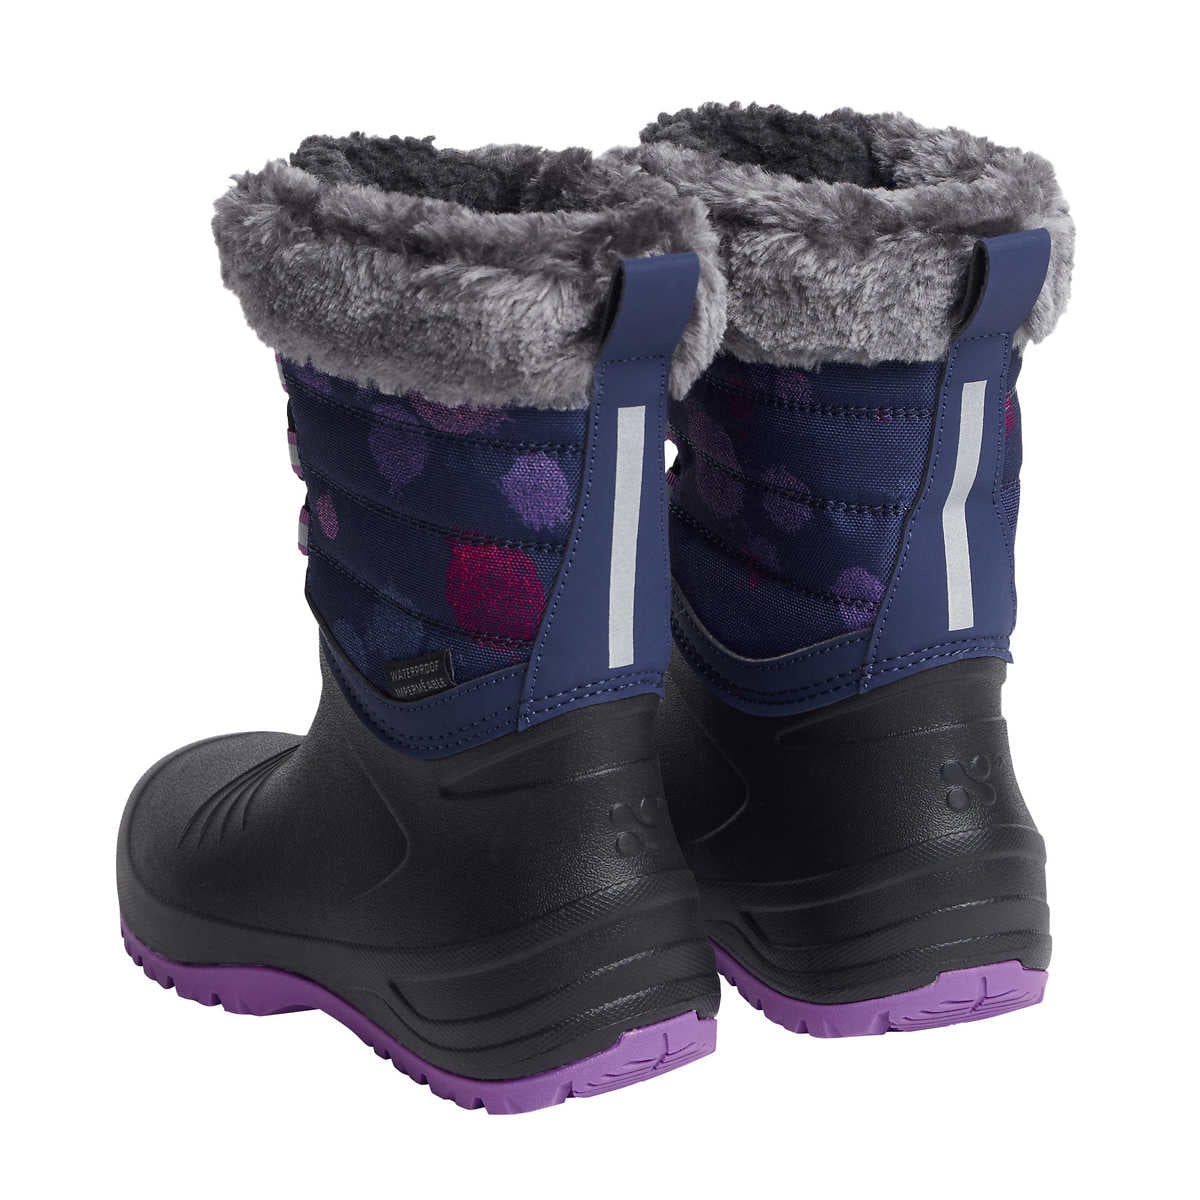 xmtn-botte-hivers-enfant-kids-winter-boots-2